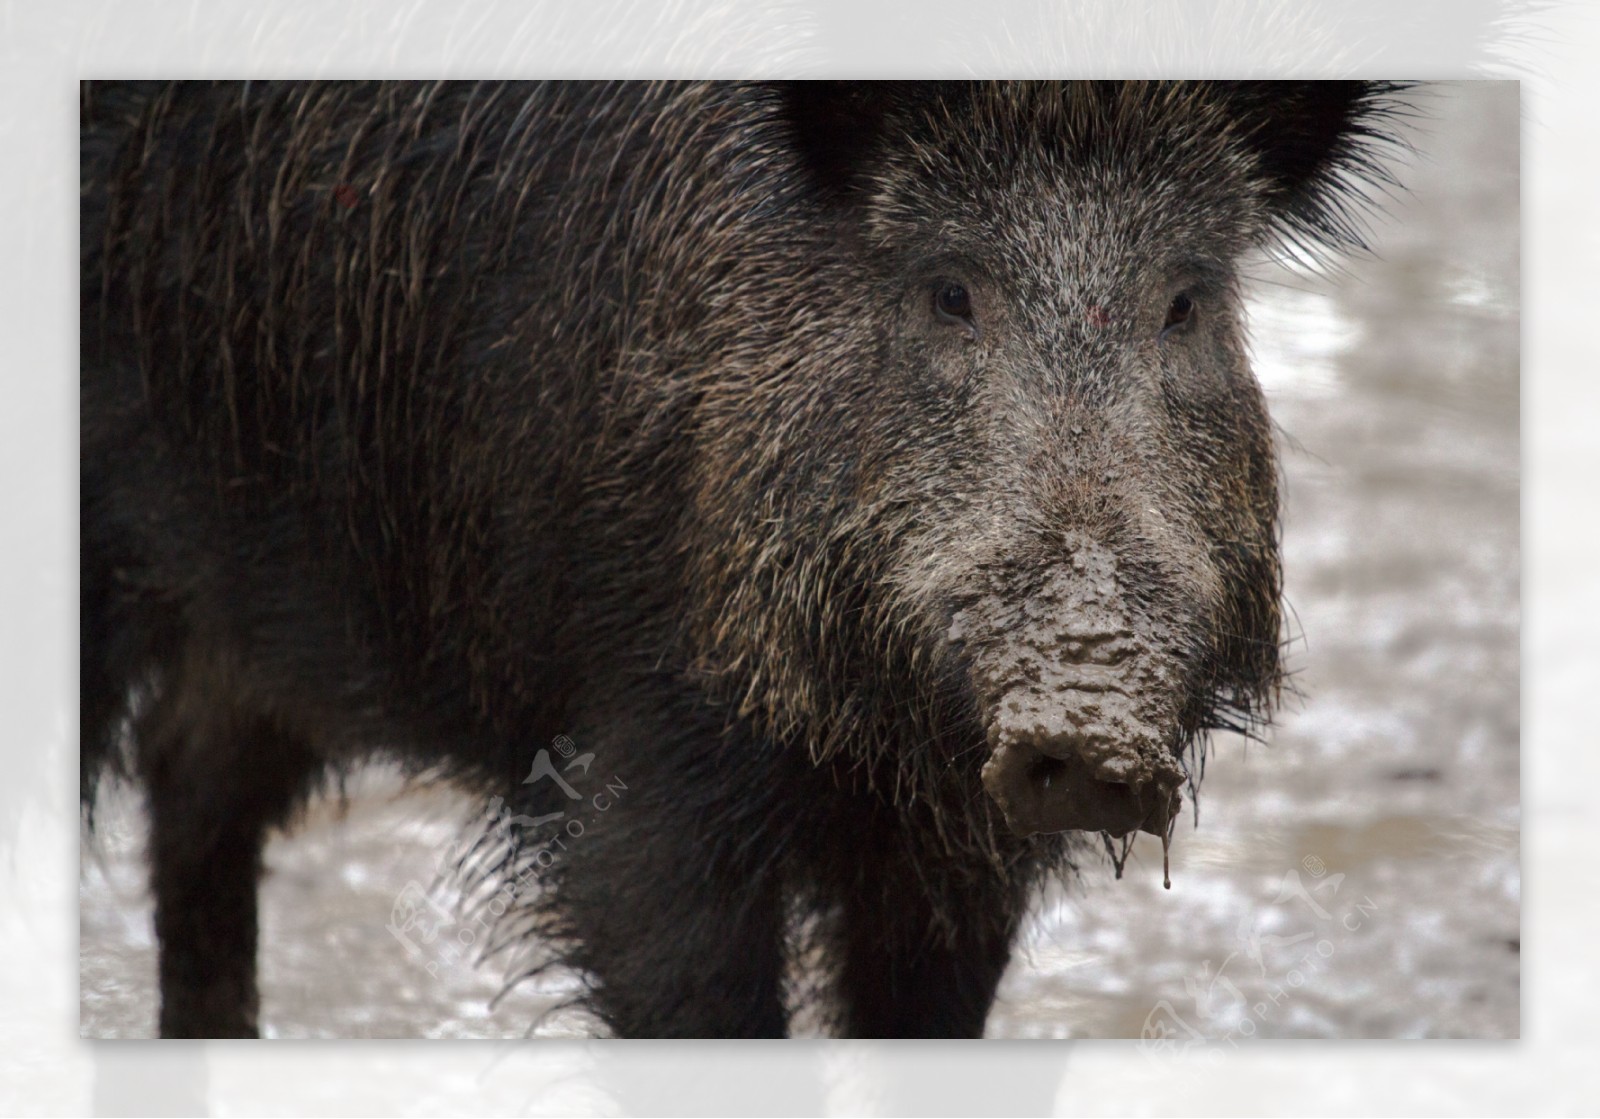 图片素材 : 森林, 野生动物, 动物群, 脊椎动物, 野猪, 猪喜欢哺乳动物 3456x4608 - - 749328 - 素材中国, 高清壁纸 - PxHere摄影图库